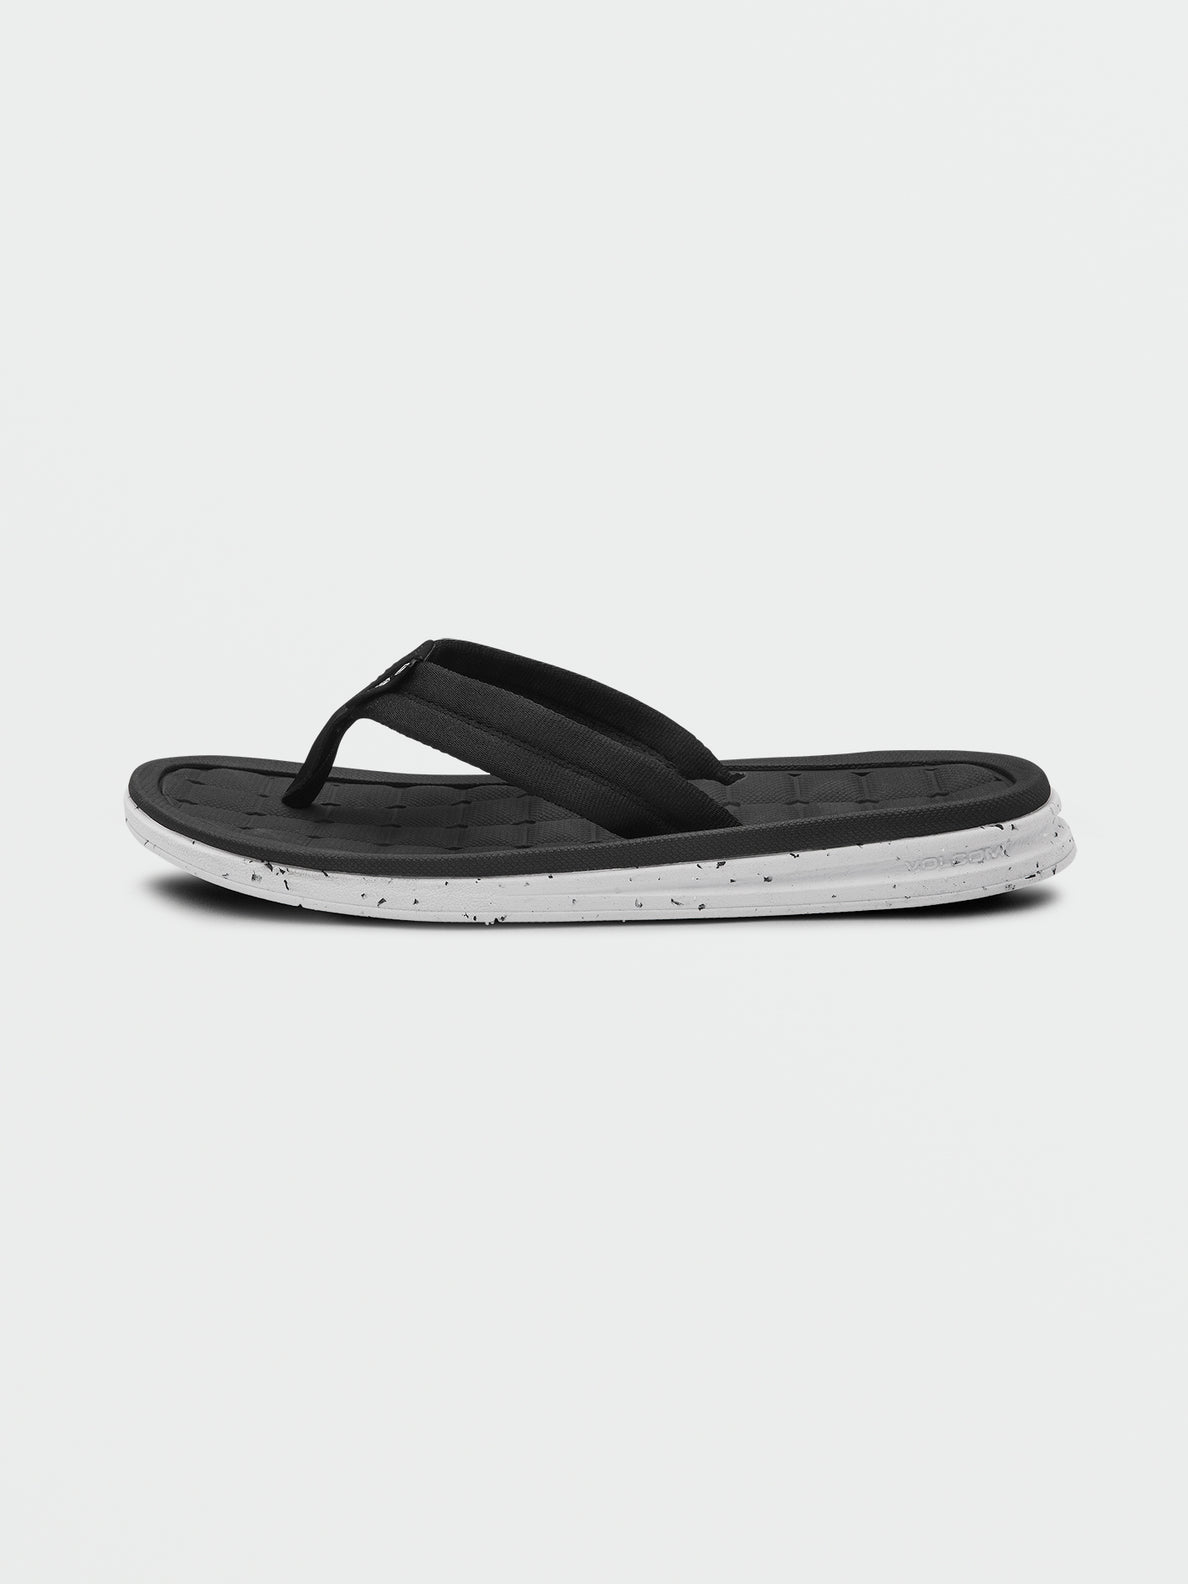 V.Co Draft Sandals - Black White (V0812301_BWH) [1]